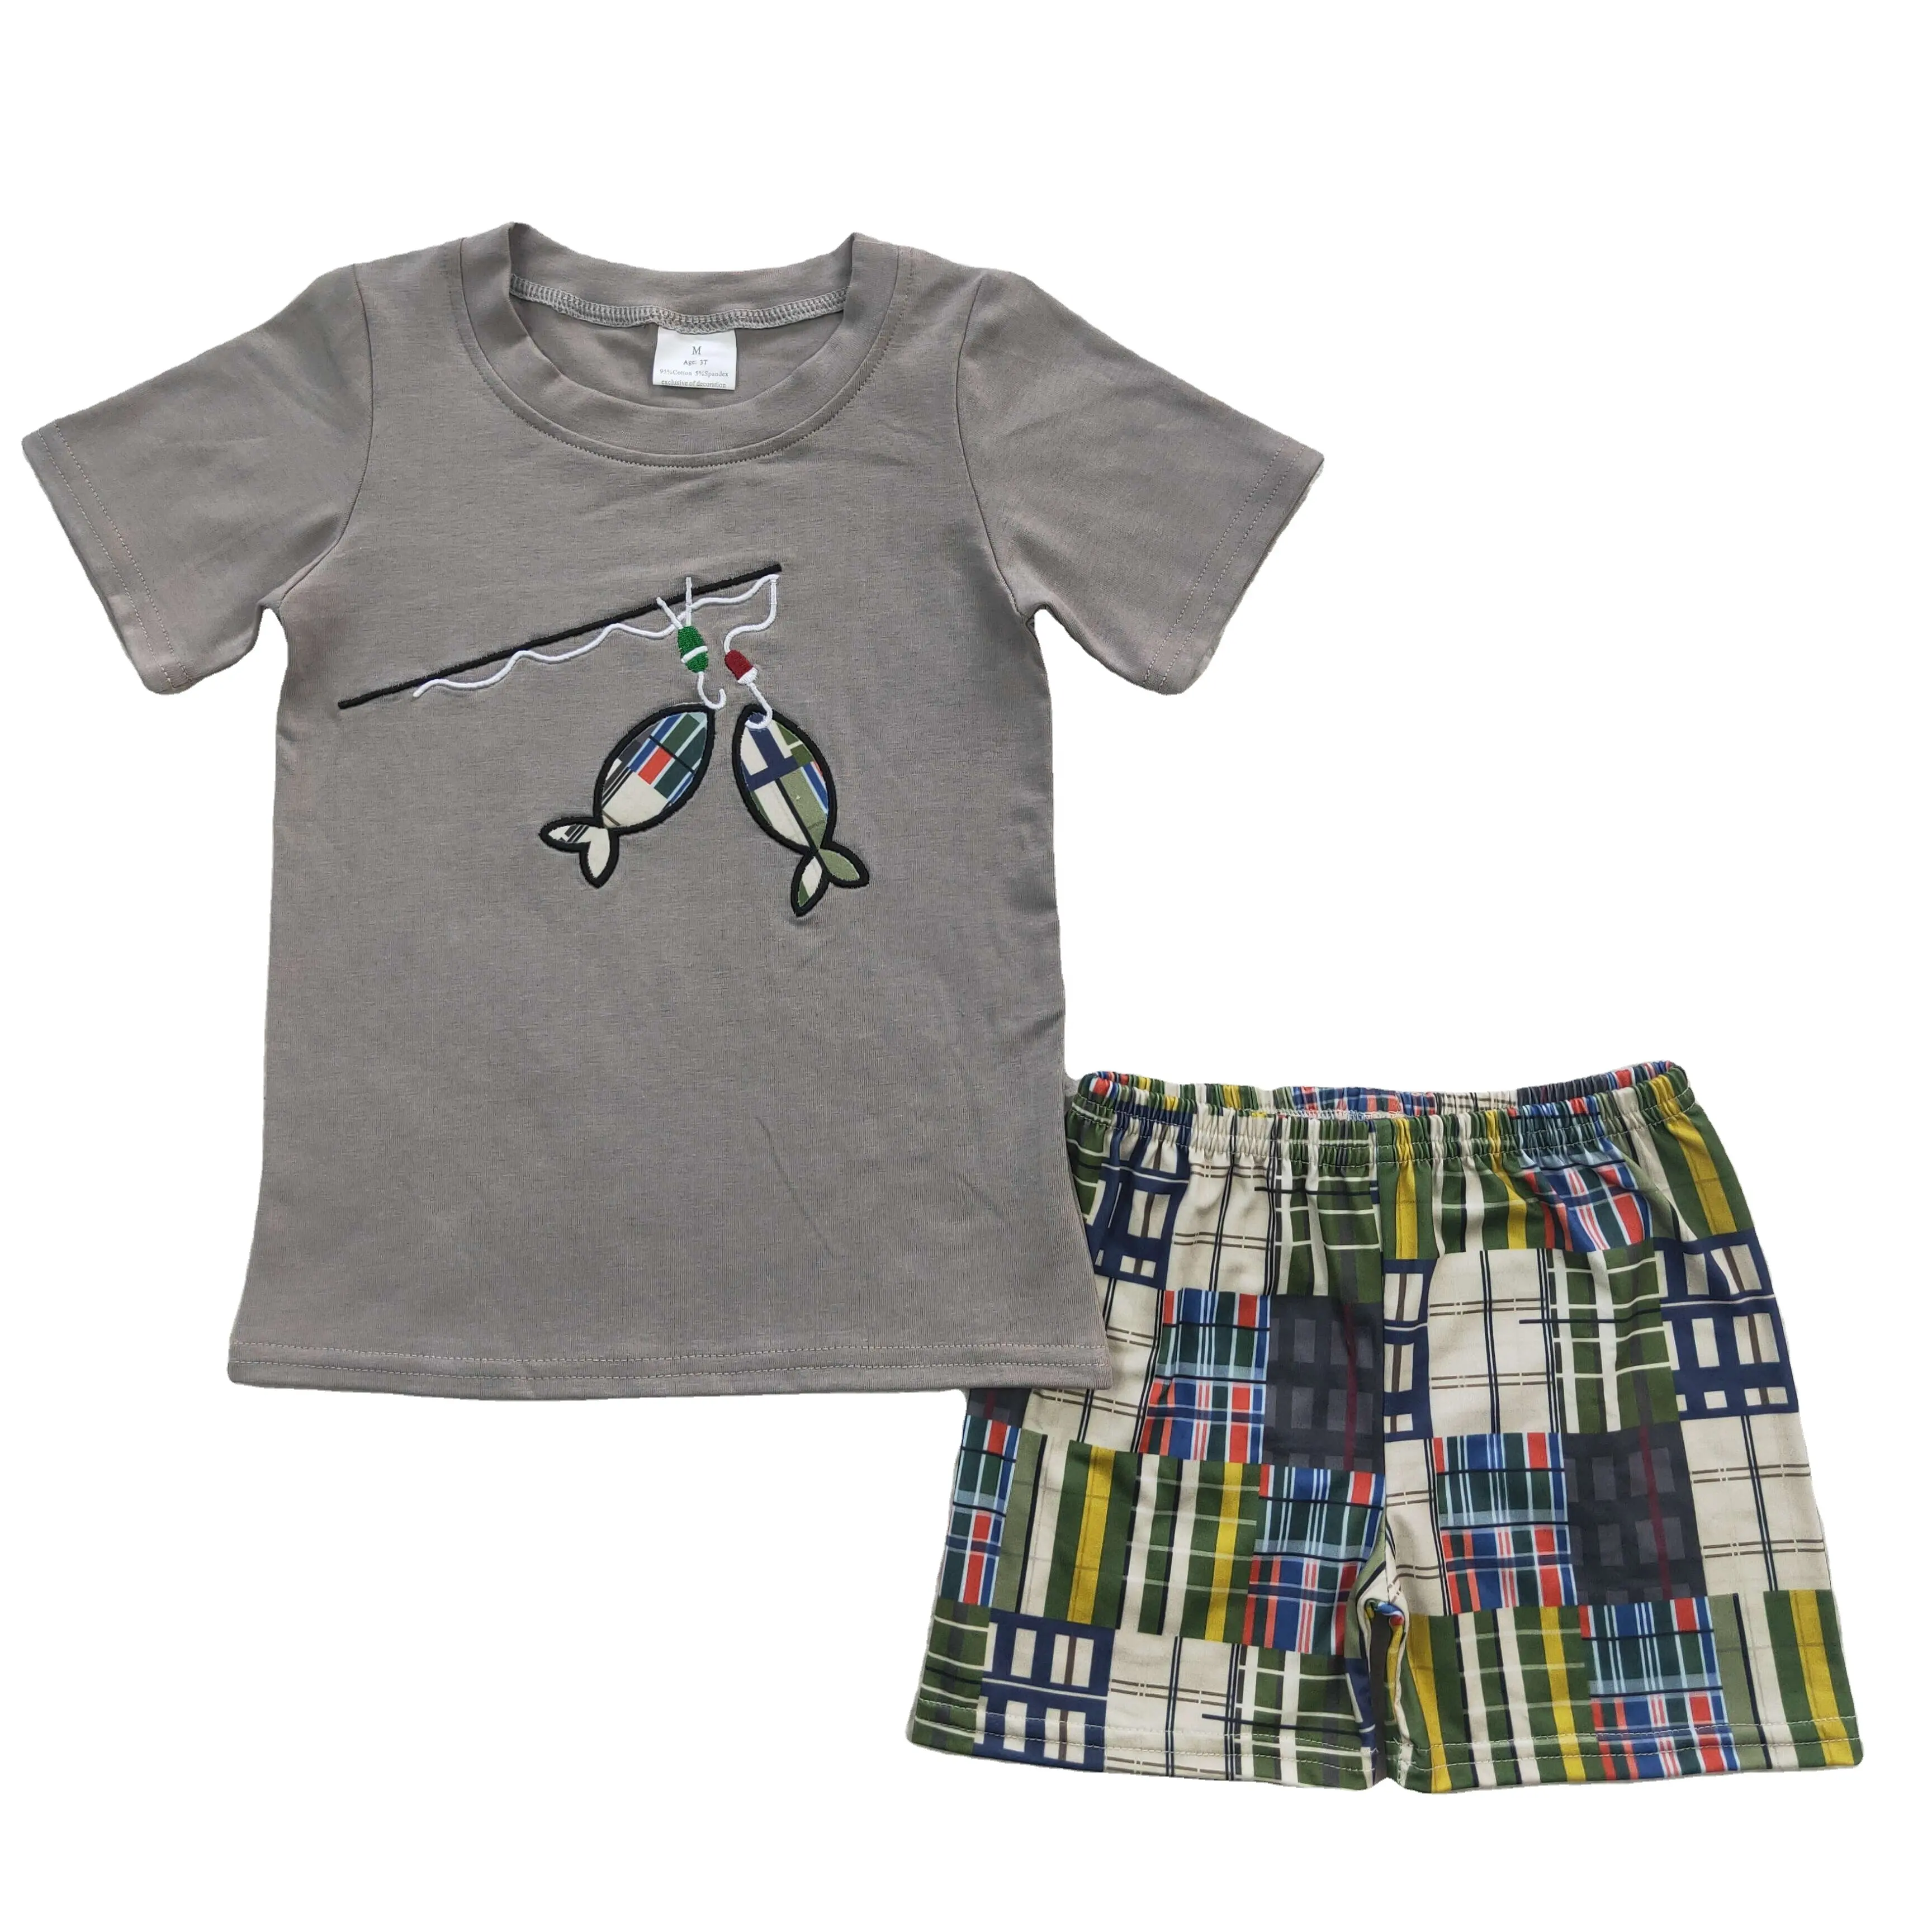 Vente en gros de vêtements pour enfants brodés ensemble haut et short à manches courtes marron pour la pêche vêtements d'été pour bébés garçons